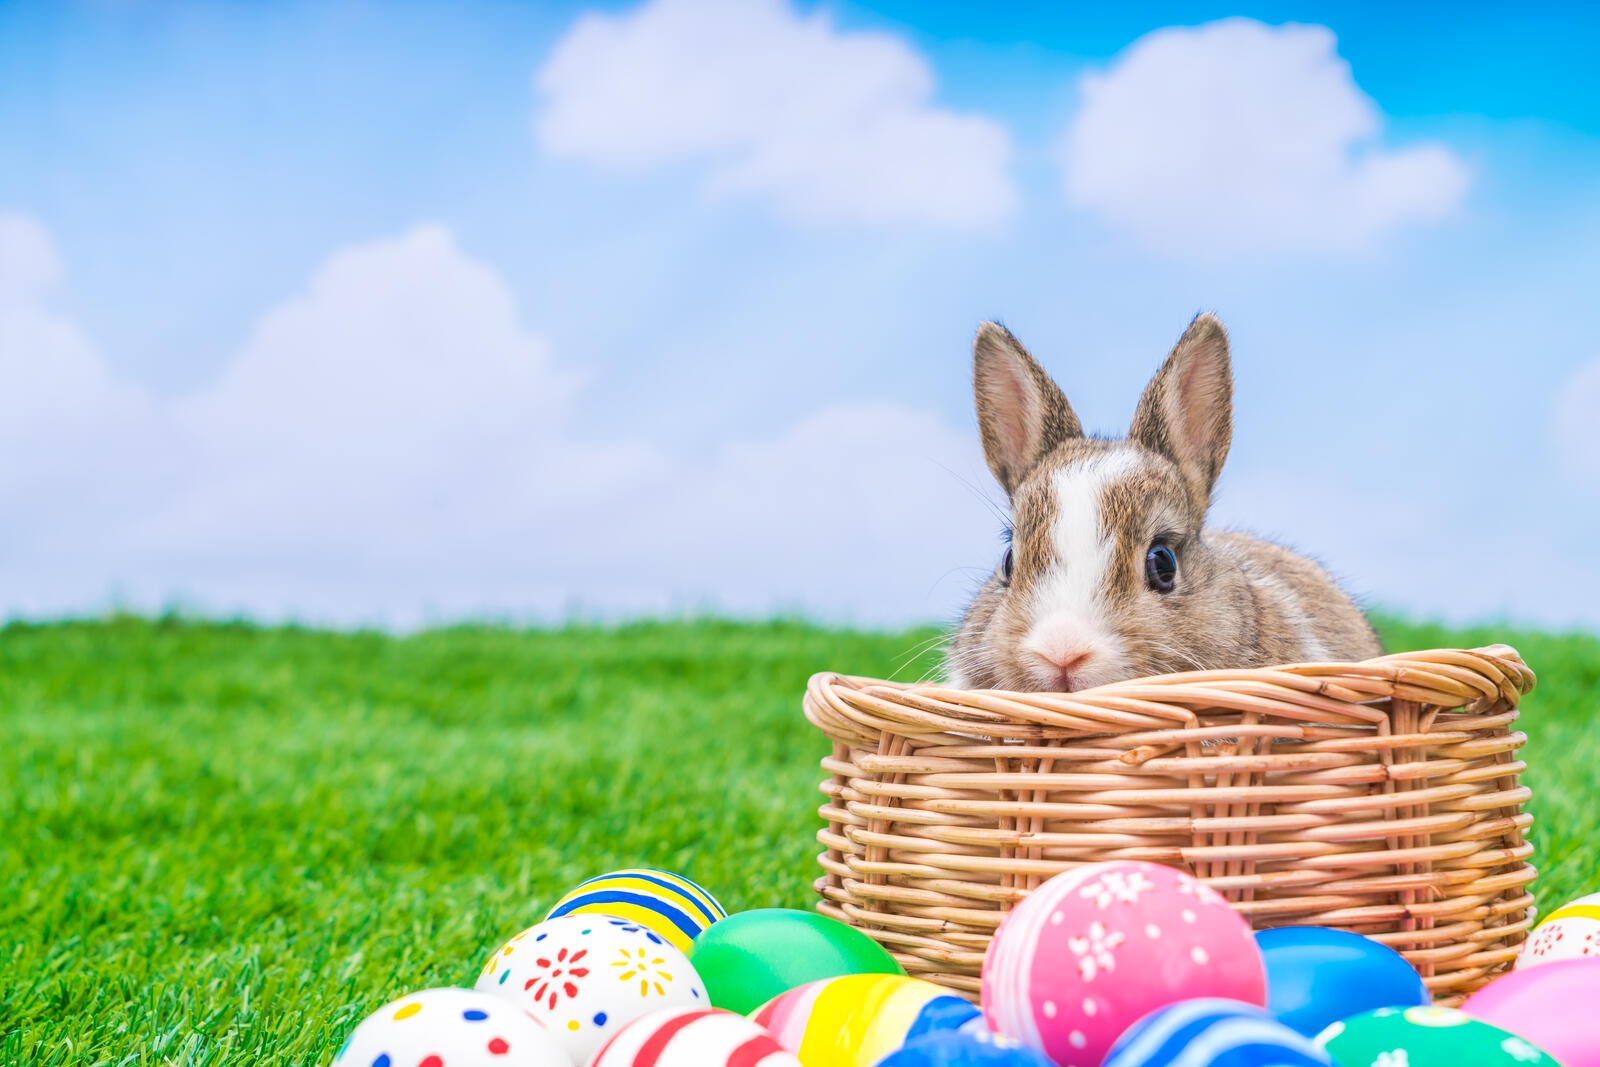 Wallpapers Easter verily risen Easter bunny on the desktop